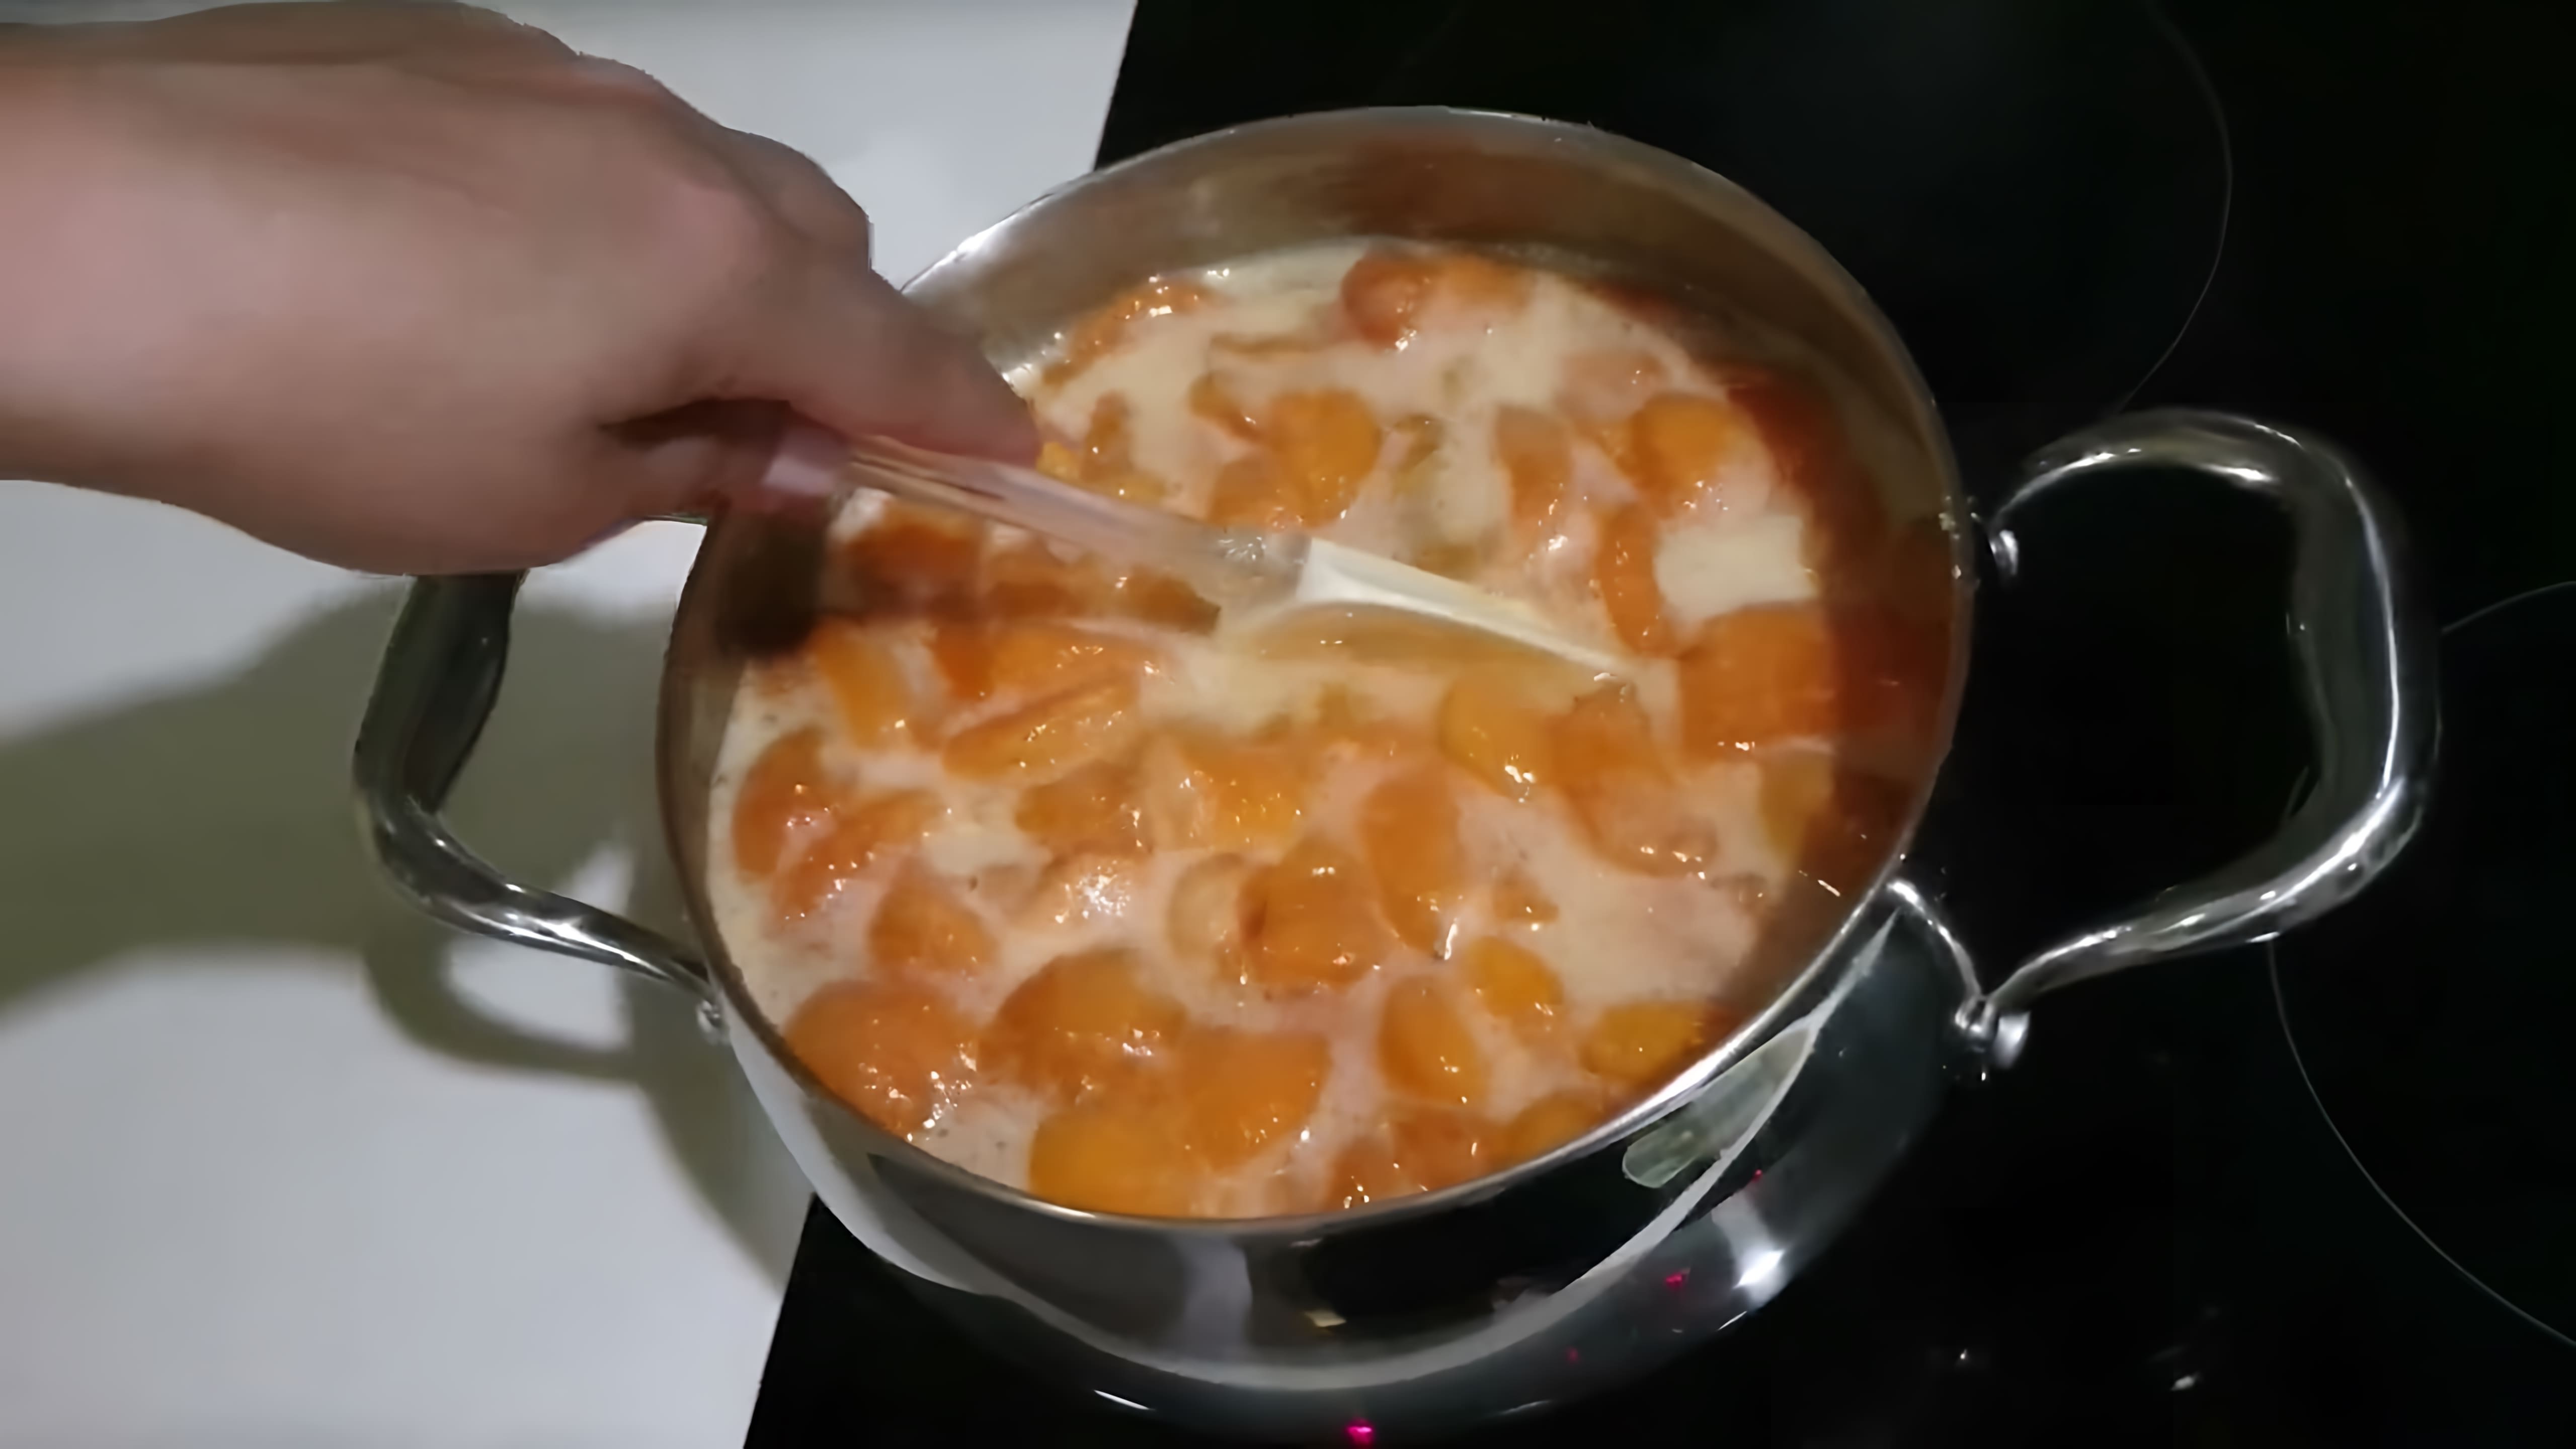 В этом видео демонстрируется процесс приготовления варенья из урюка без добавления воды